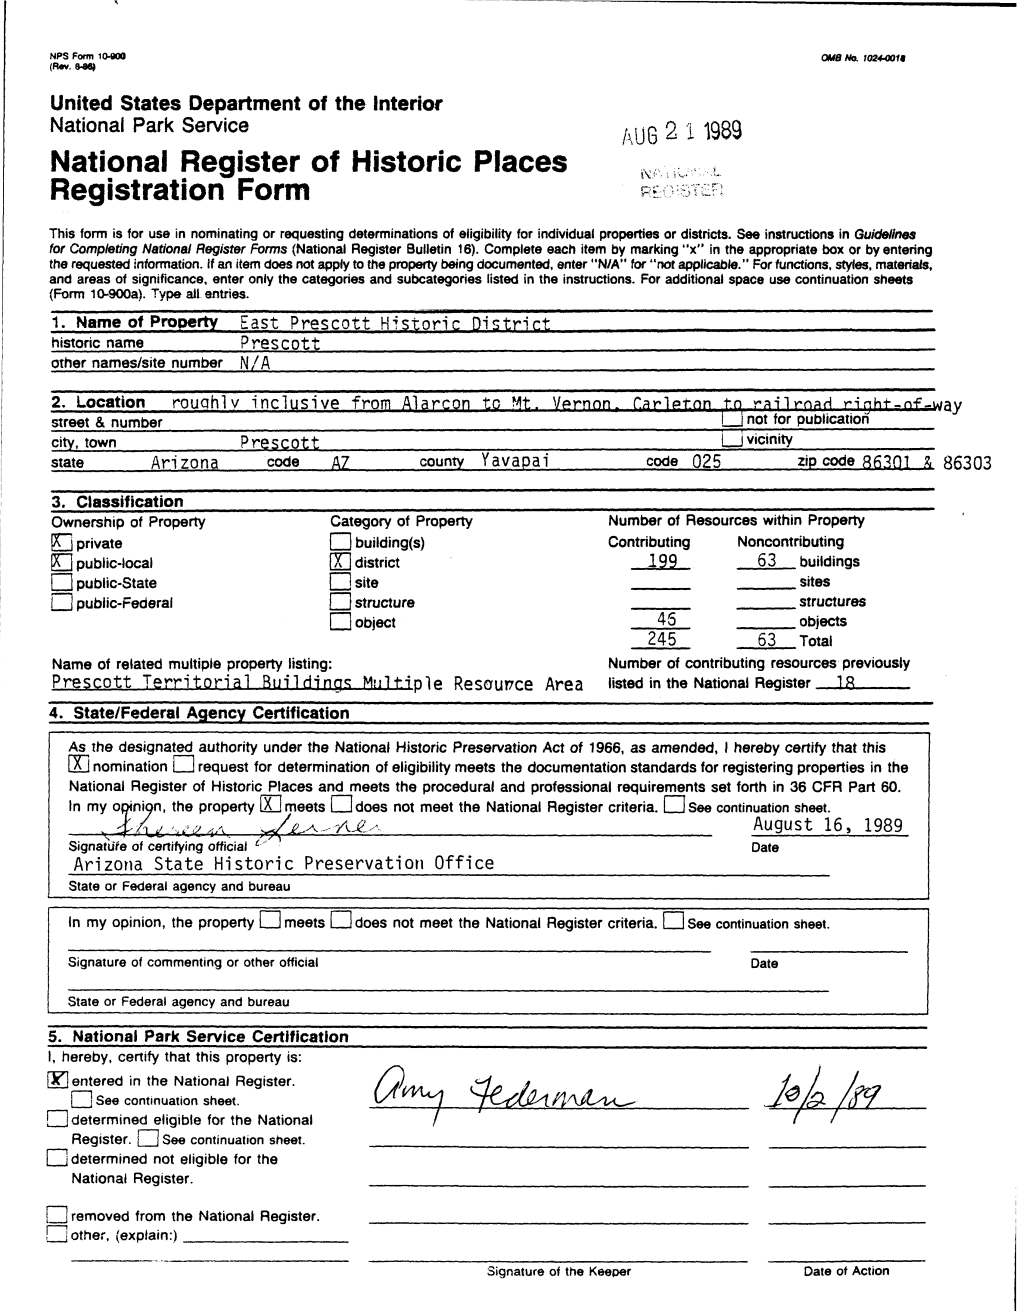 National Register of Historic Places Registration Form RE STER T^ Jel